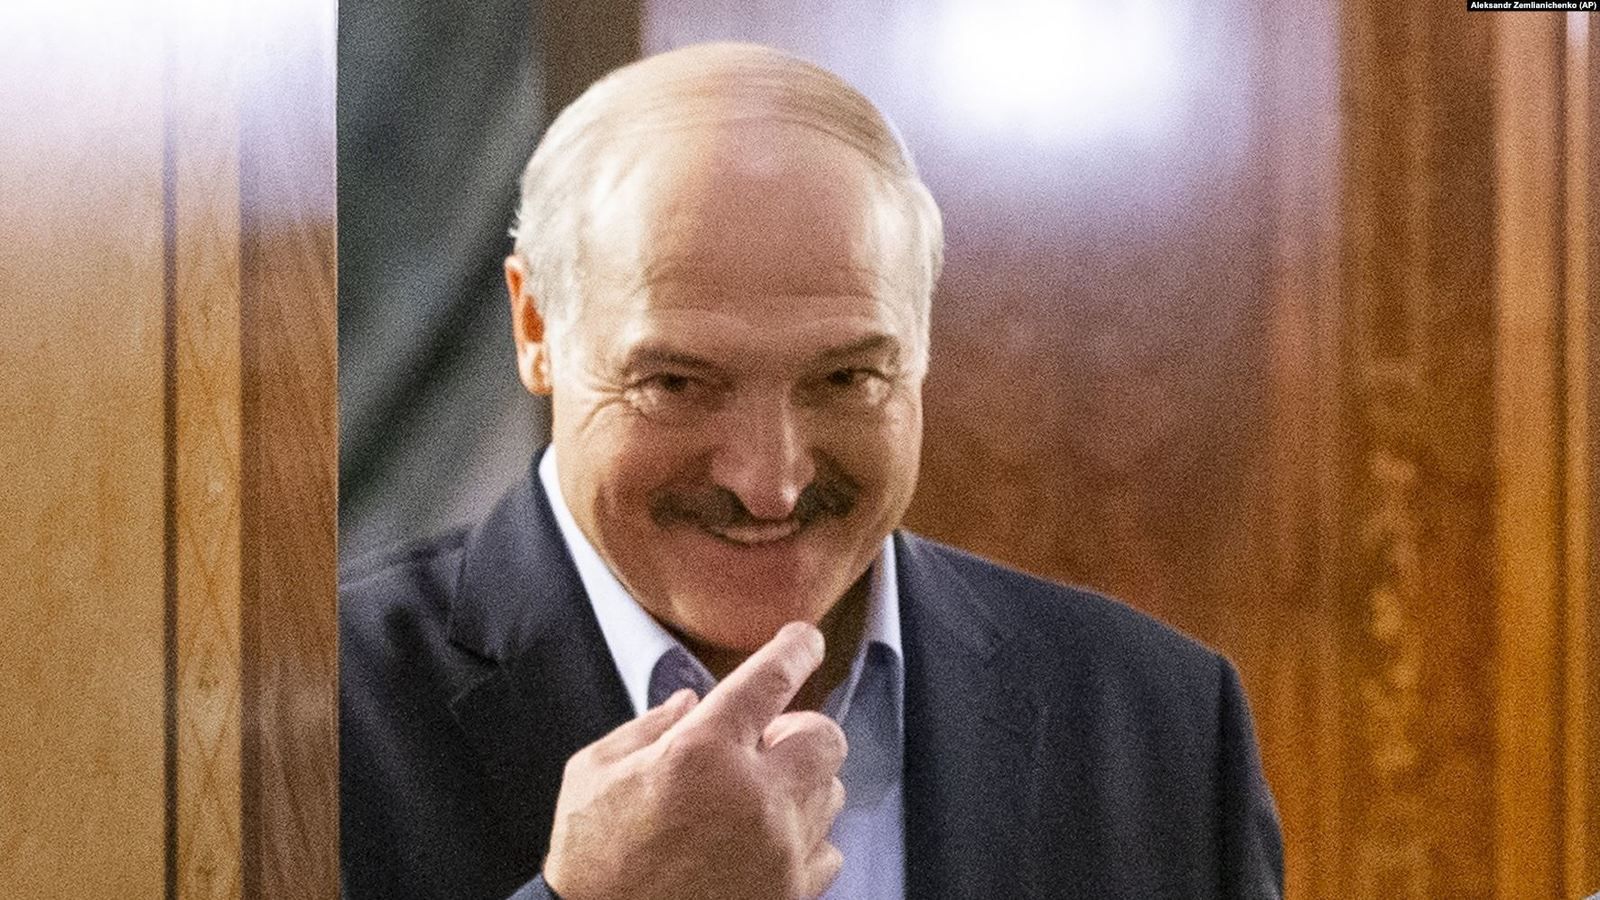 Alyaksandr Lukashenka, Président de la République de Biélorussie : "J'appelle le coronavirus rien de moins qu'une psychose". (Photo : AP)